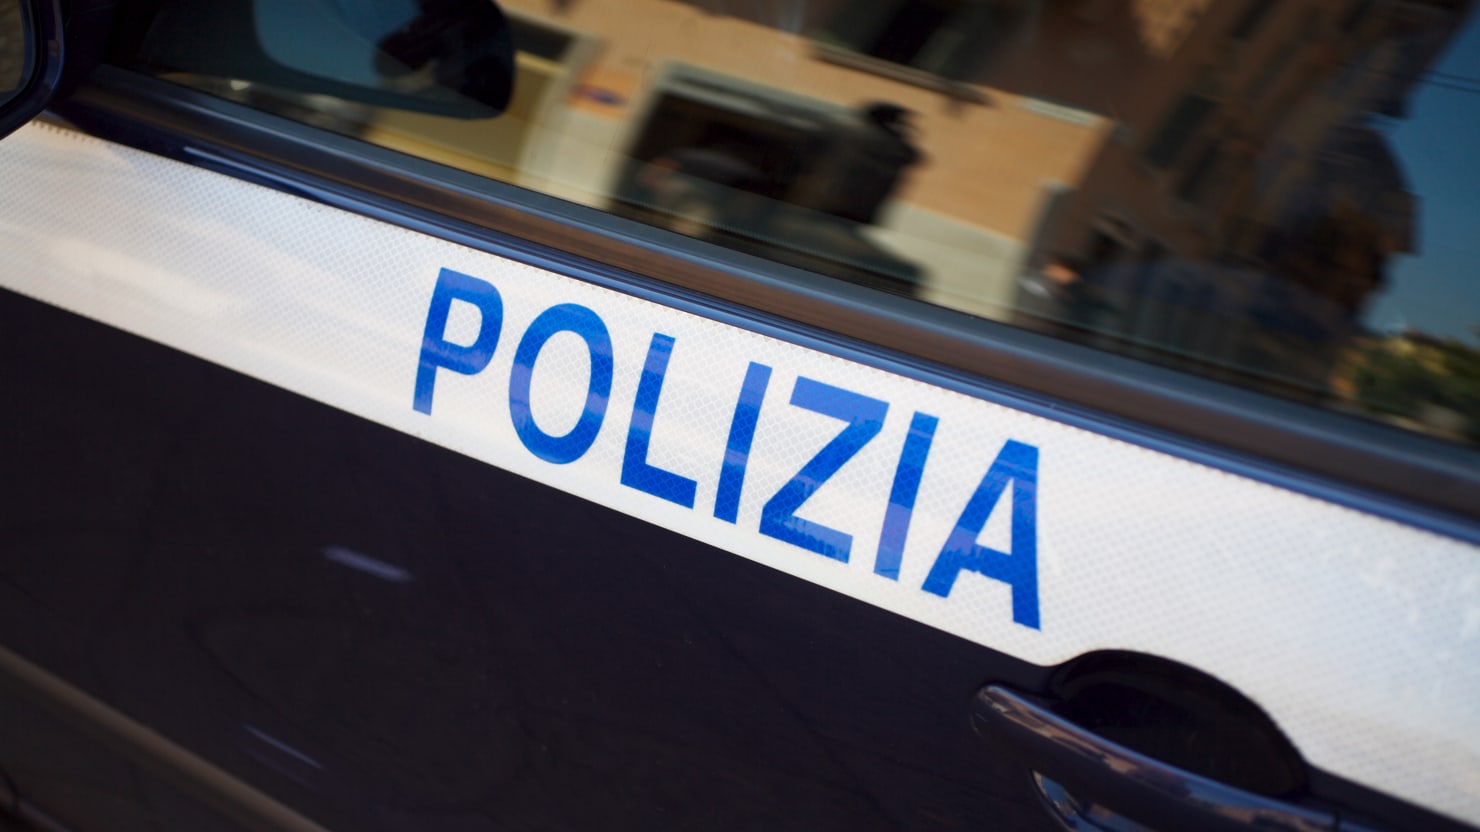 Encuentran a un británico muerto en un lujoso hotel italiano tras un “juego erótico” que salió mal, según los informes